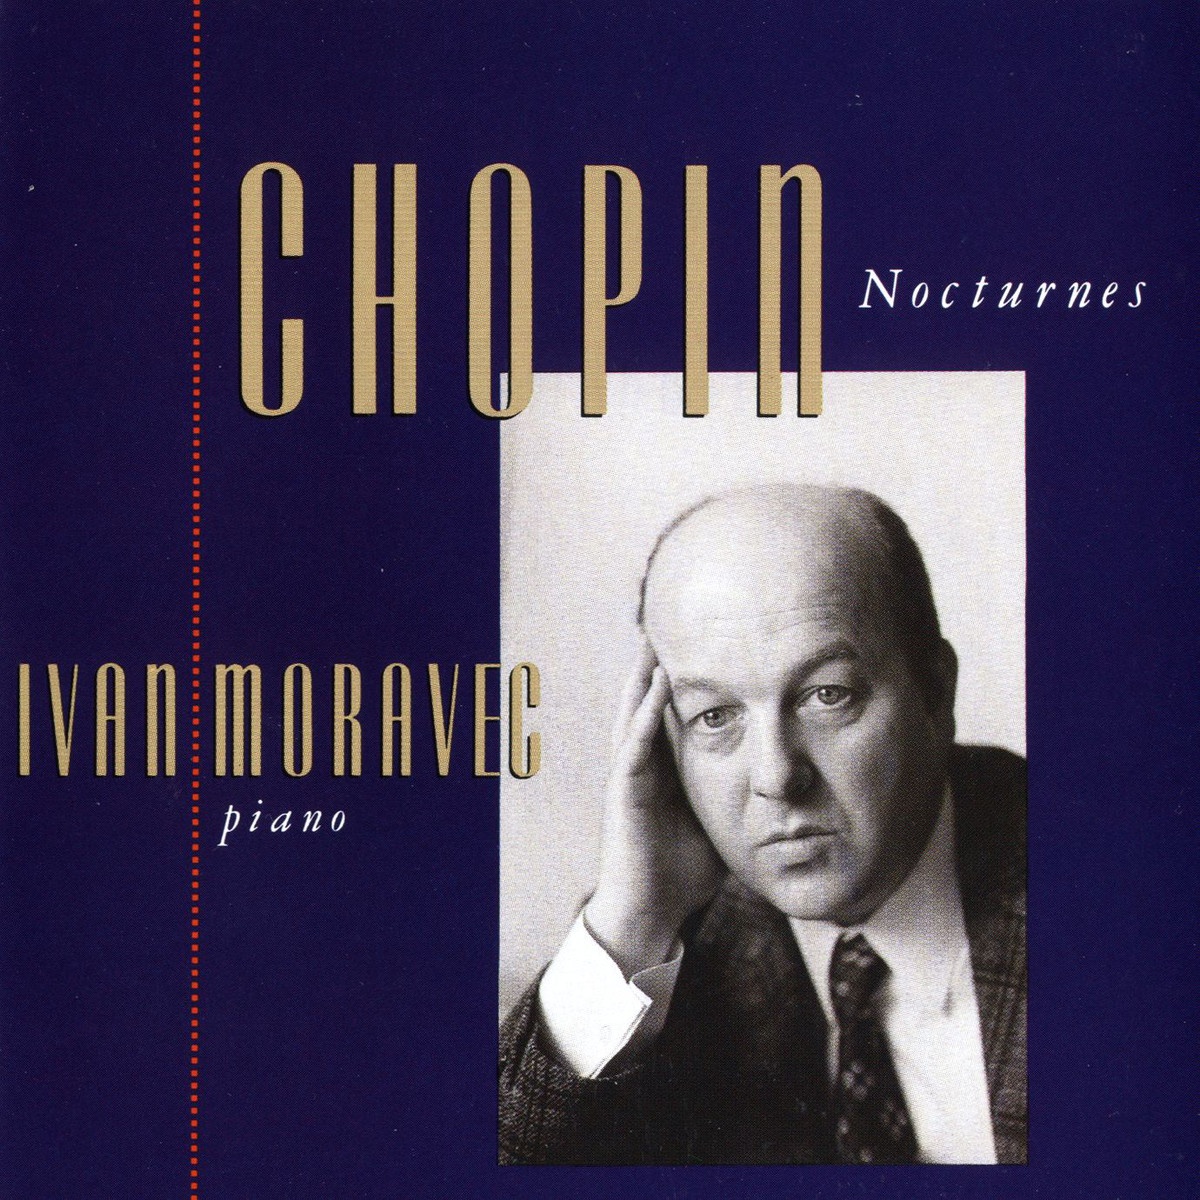 Nocturnes - Complete:C sharp minor, op. 27, no. 1